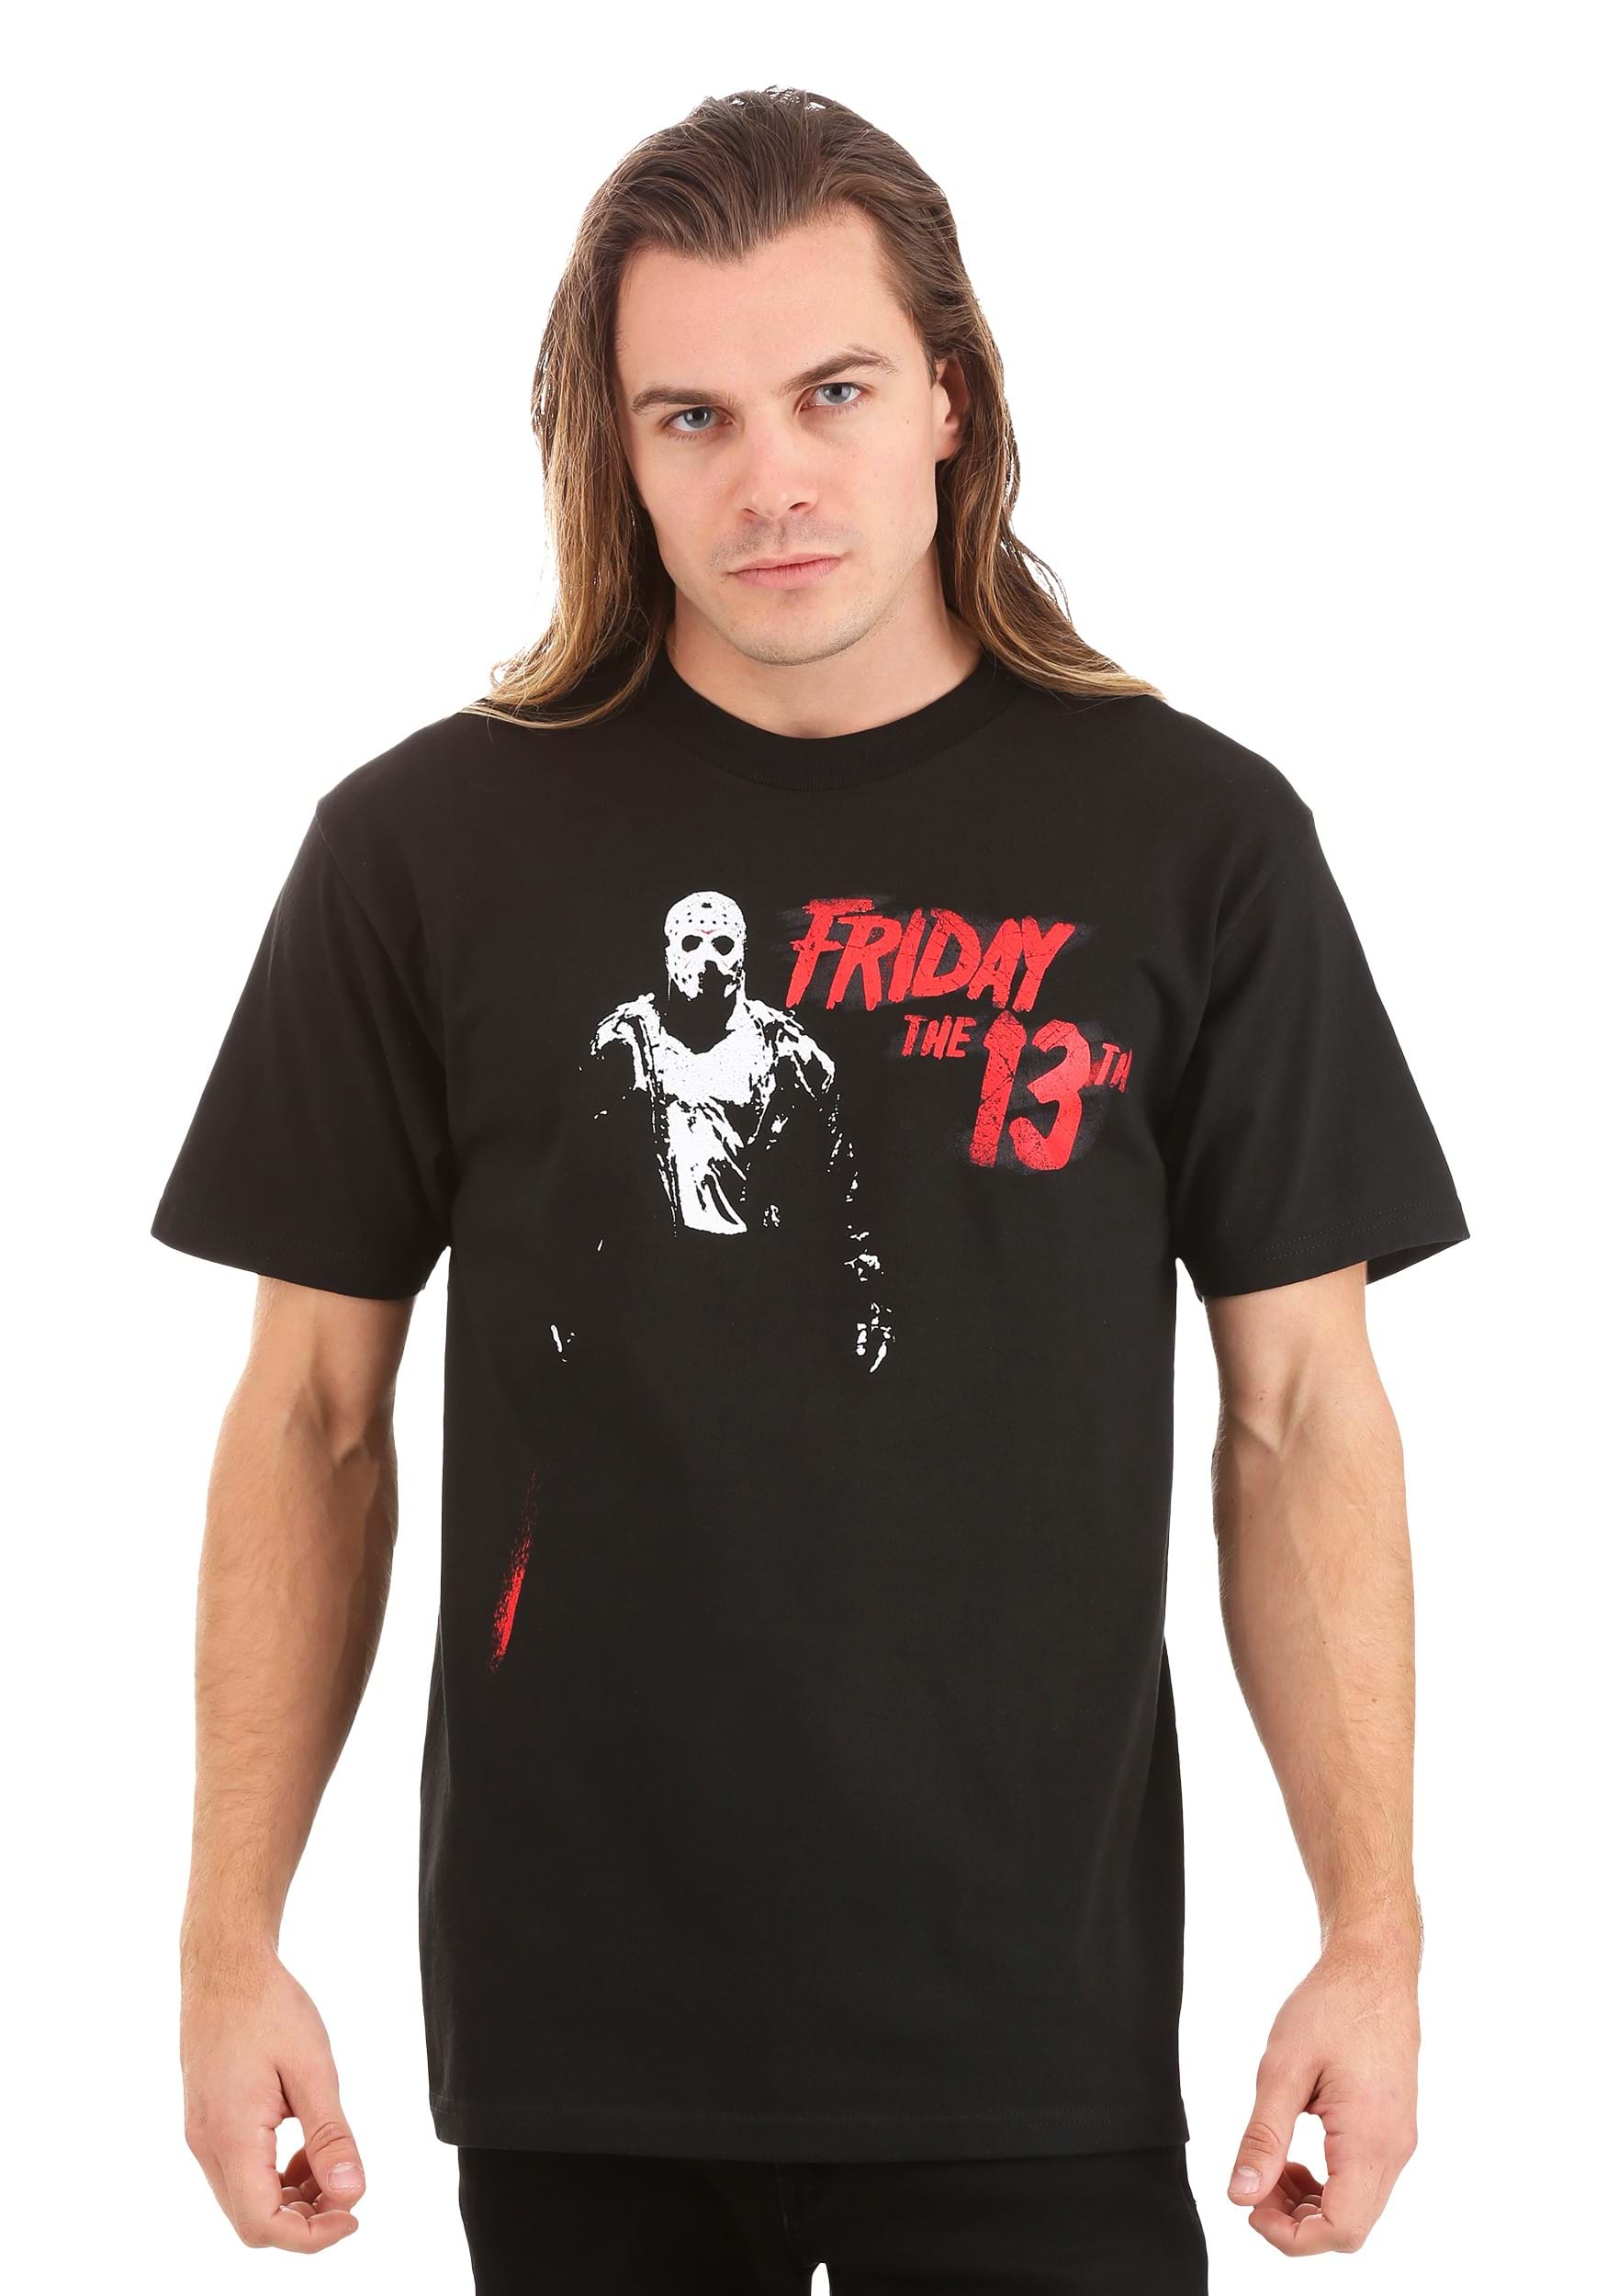 Adult Jason Vorhees Friday La 13ª camiseta negra Multicolor